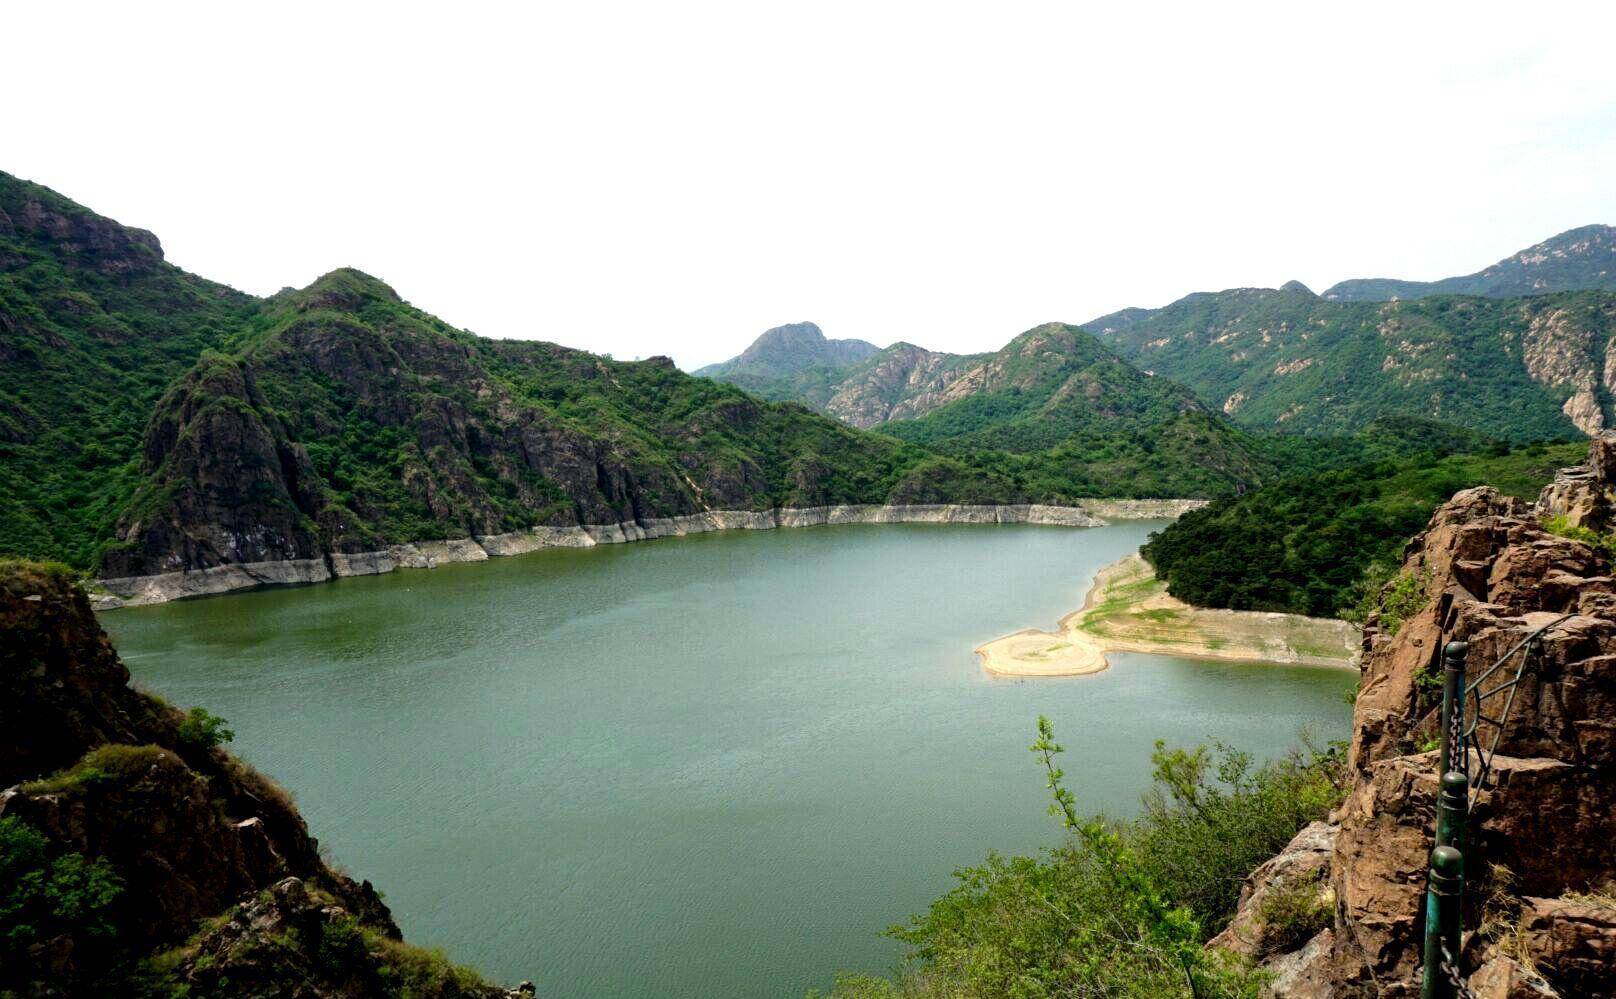 秦皇岛山海关燕塞湖:一座被誉为北国小桂林的水库,你认同么